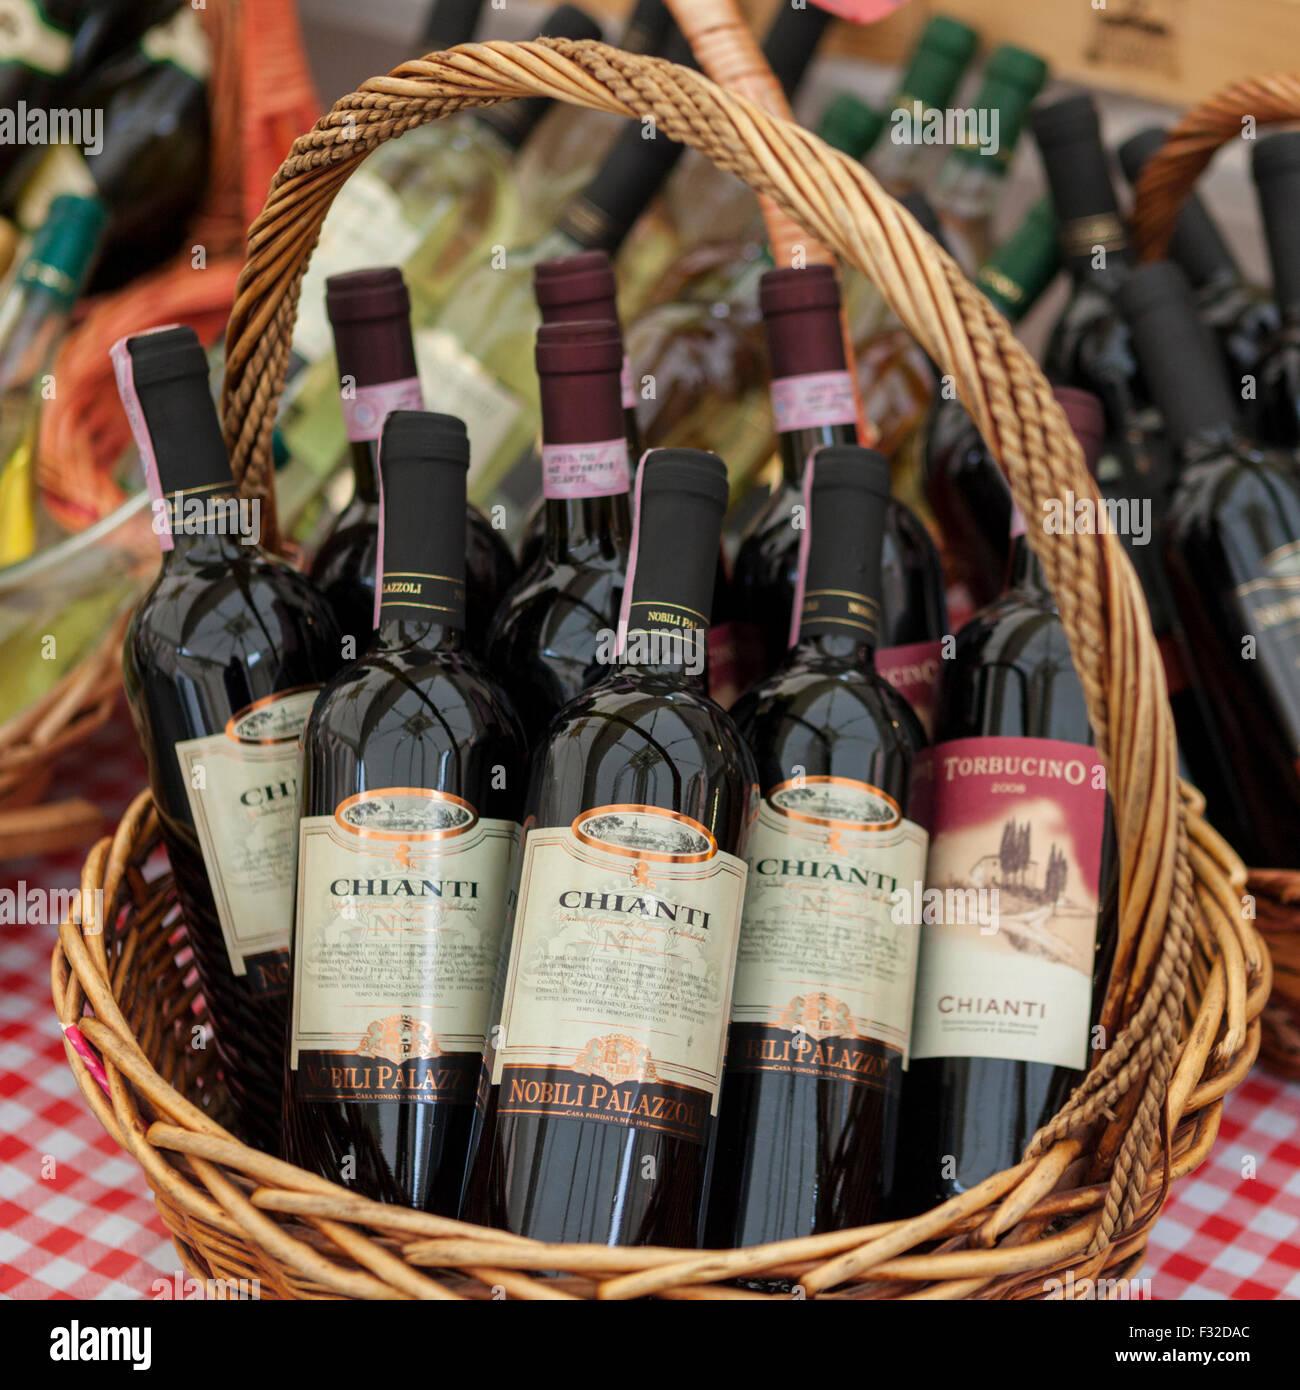 Panier de bouteilles de vin du Chianti sur une nappe à carreaux rouge en plein air, dans le marché de Campo de Fiori, Rome Banque D'Images